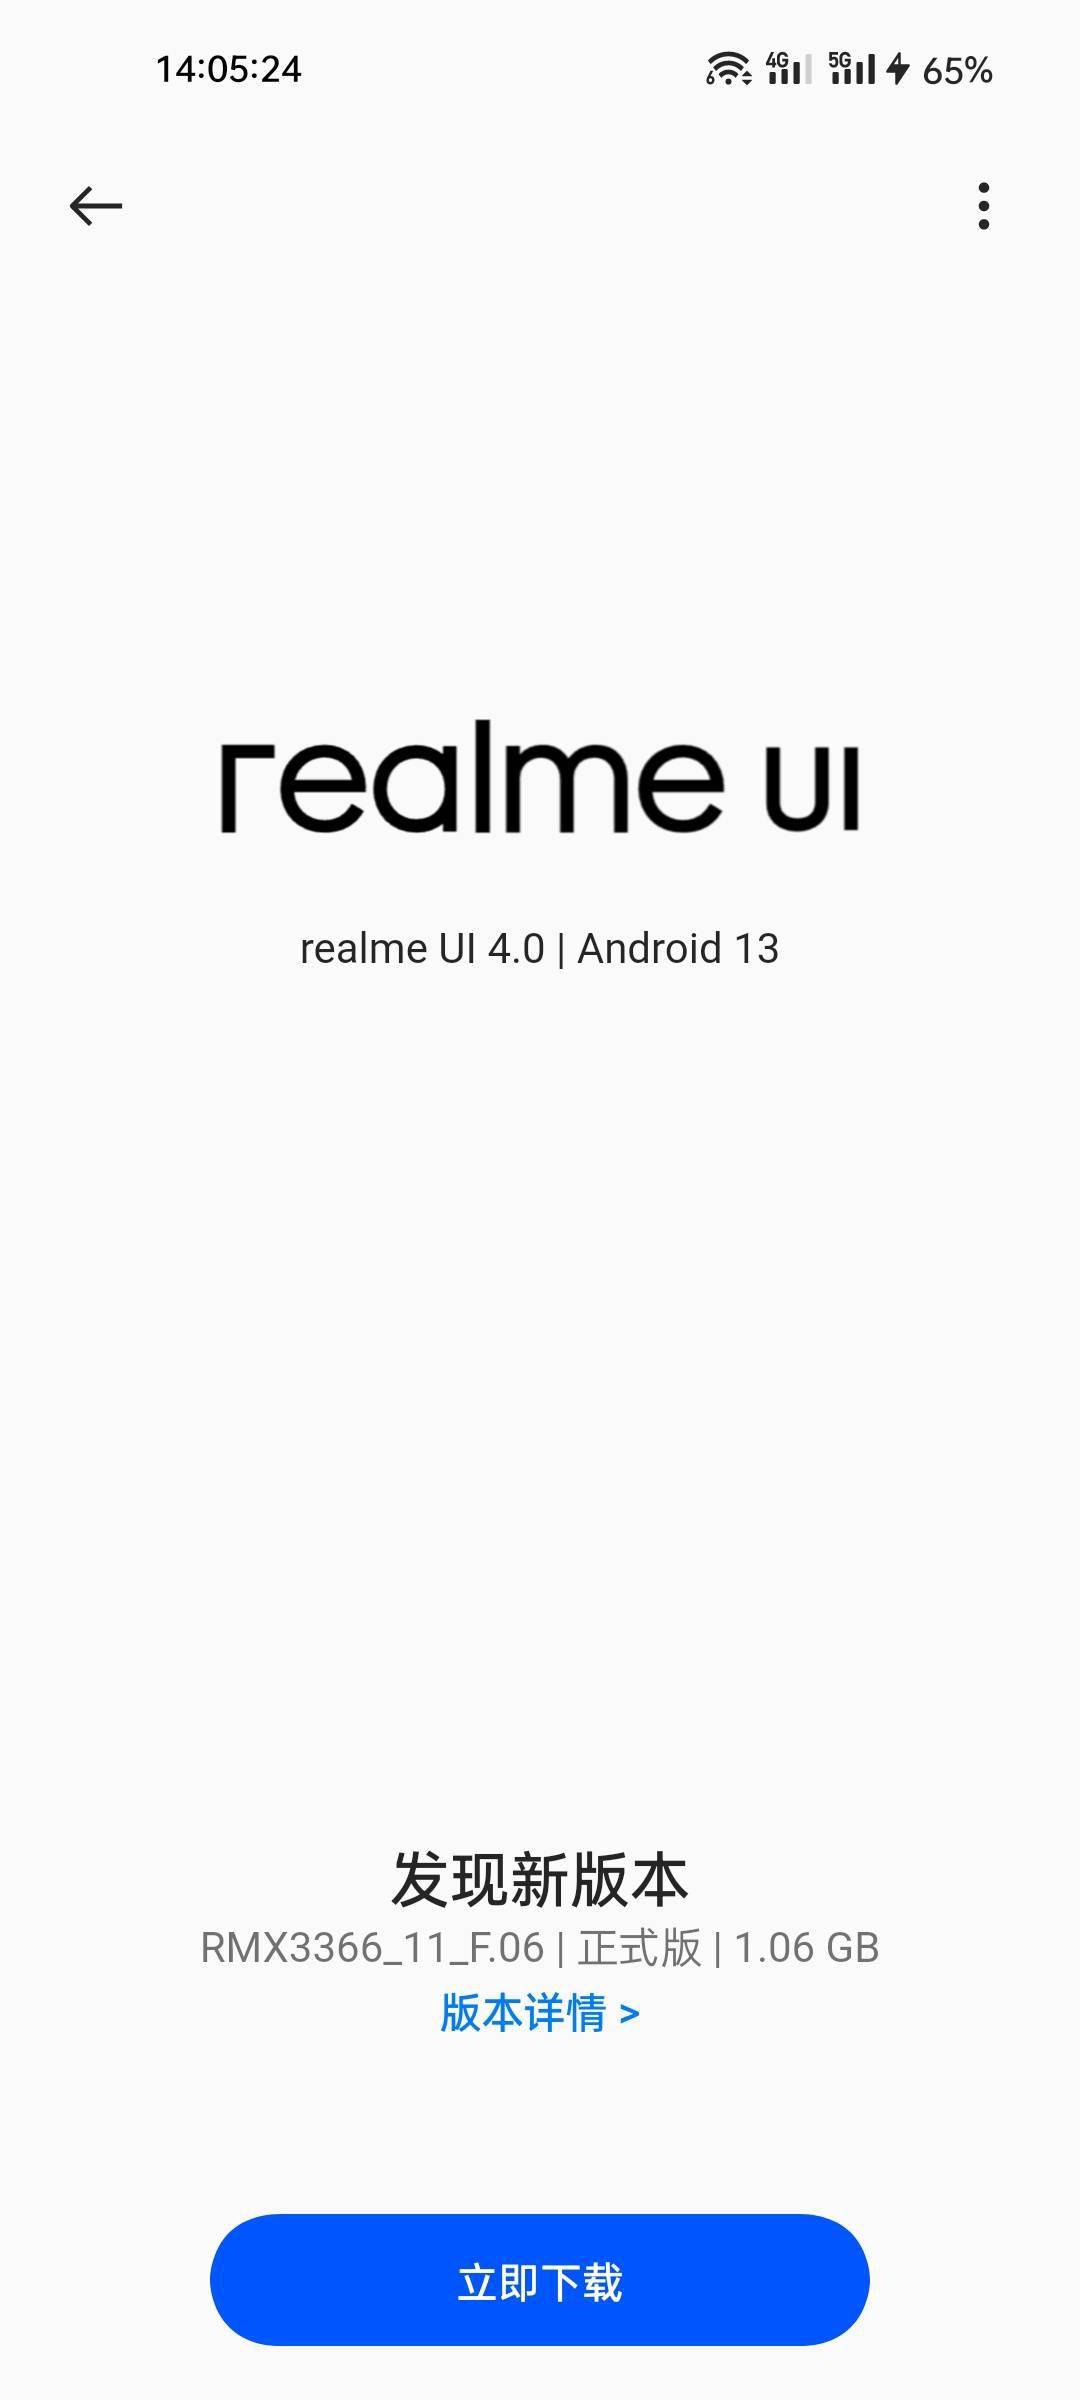 华为手机私密文件夹
:真我 GT 大师探索版推送 realme UI 4.0 正式版